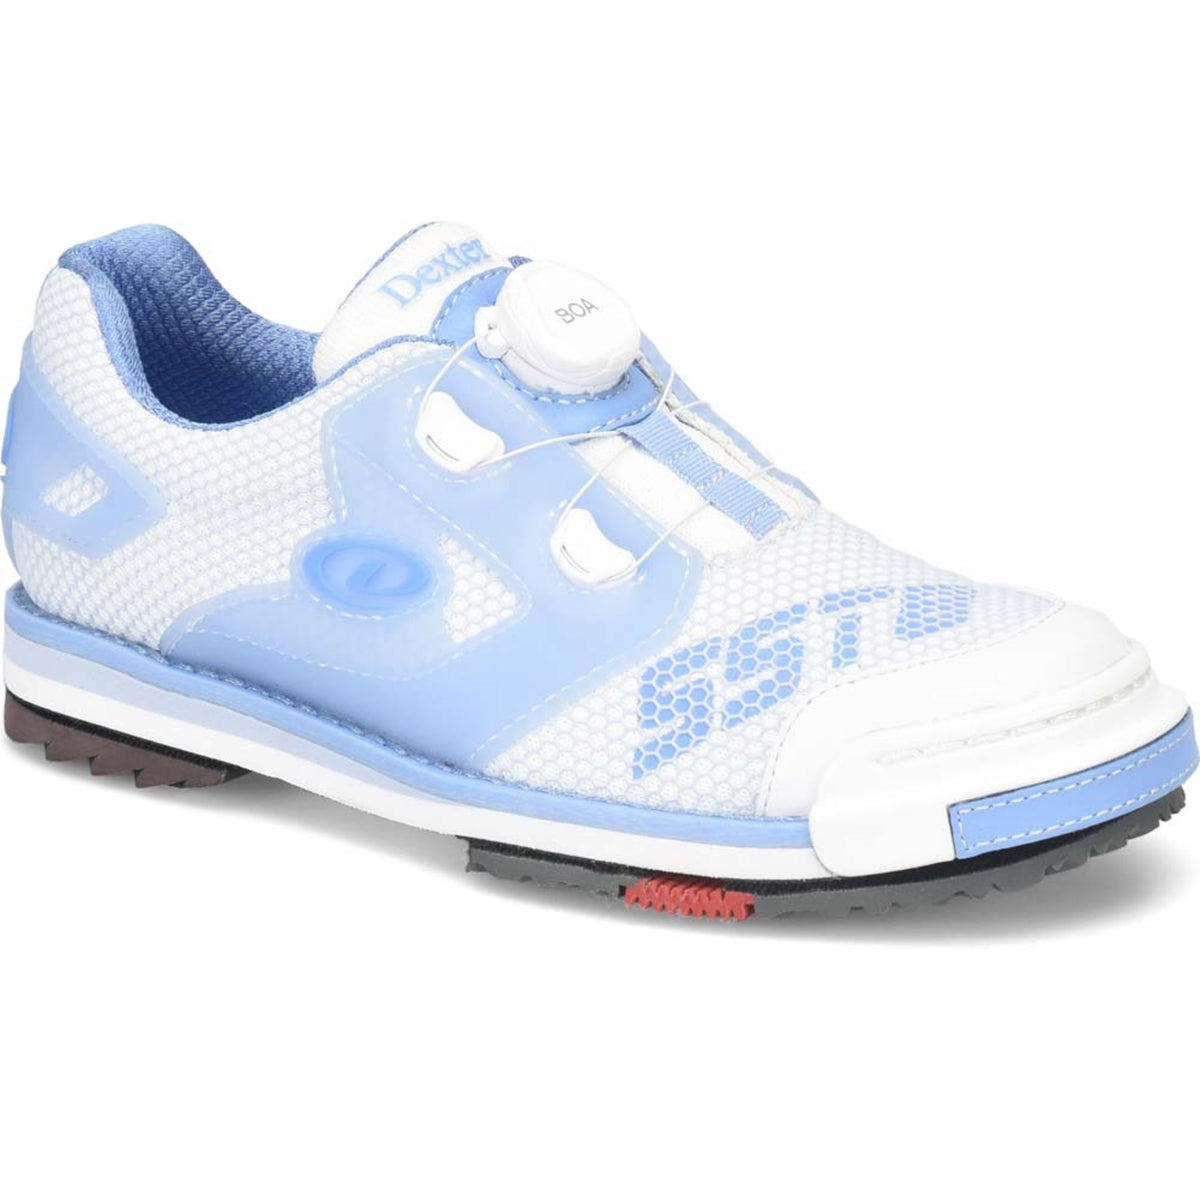 Sst 8 Power Frame Boa White/ Blue Shoes